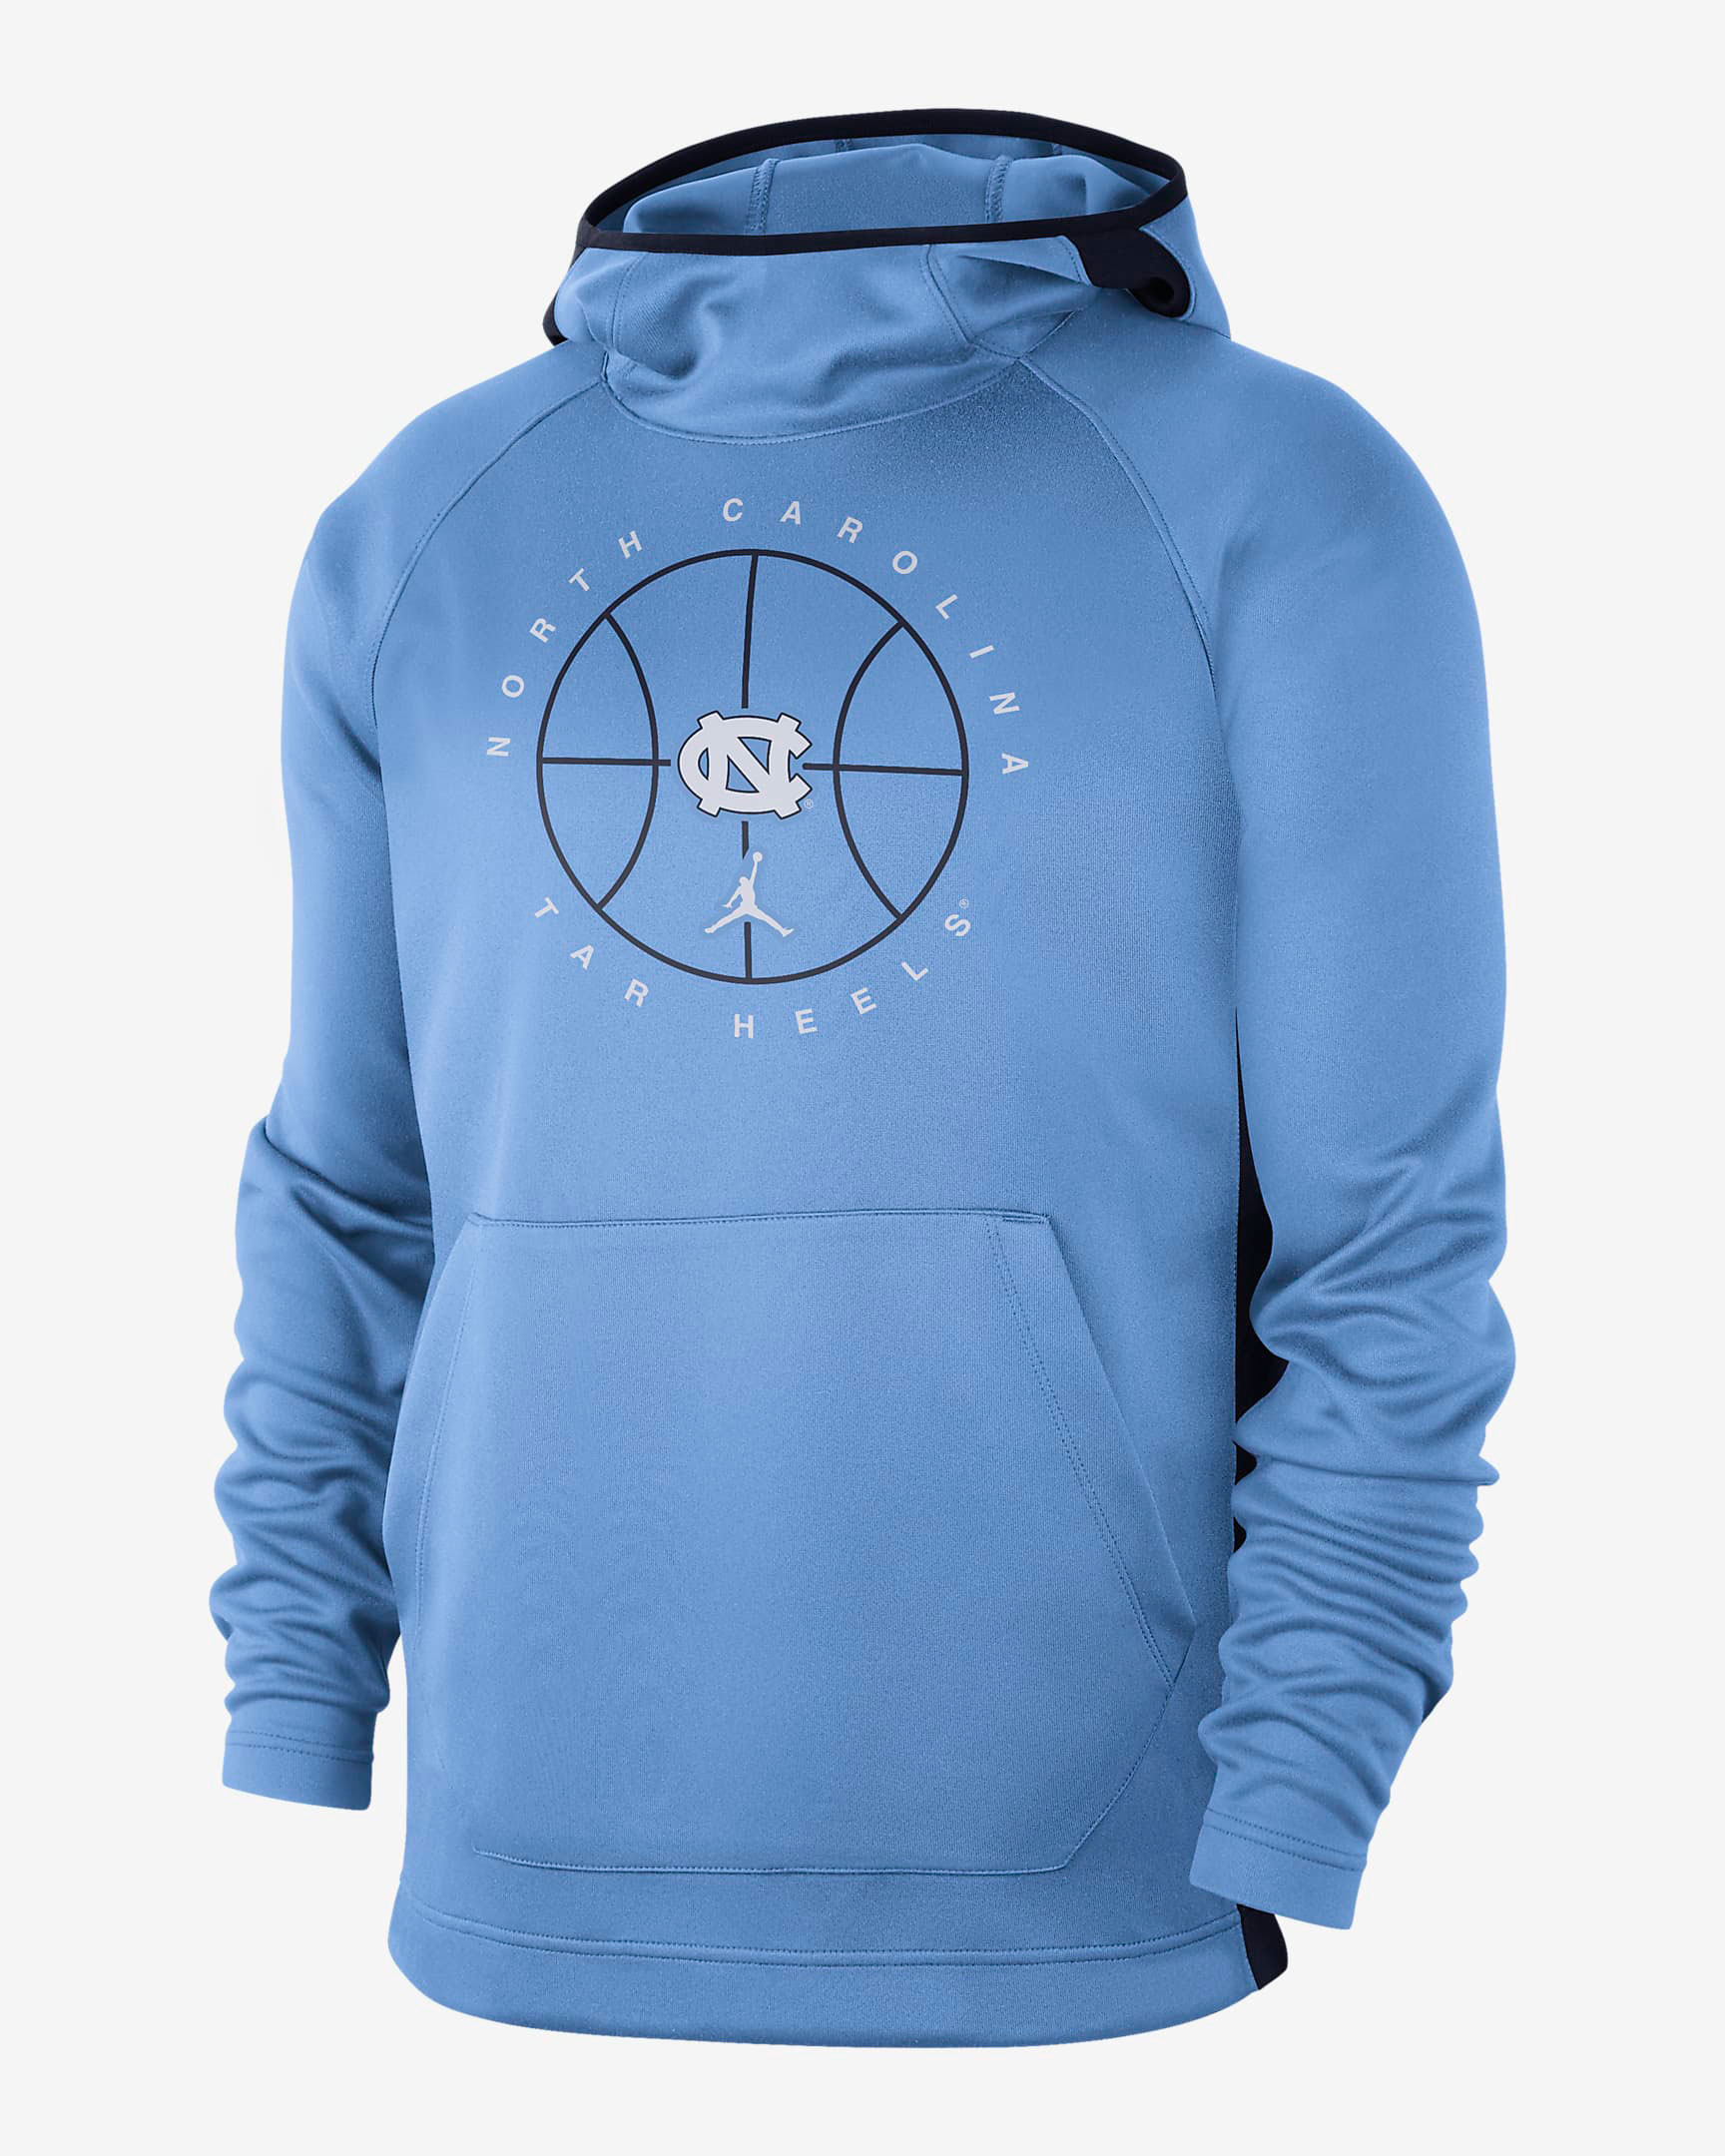 jordan-9-university-blue-unc-hoodie-1